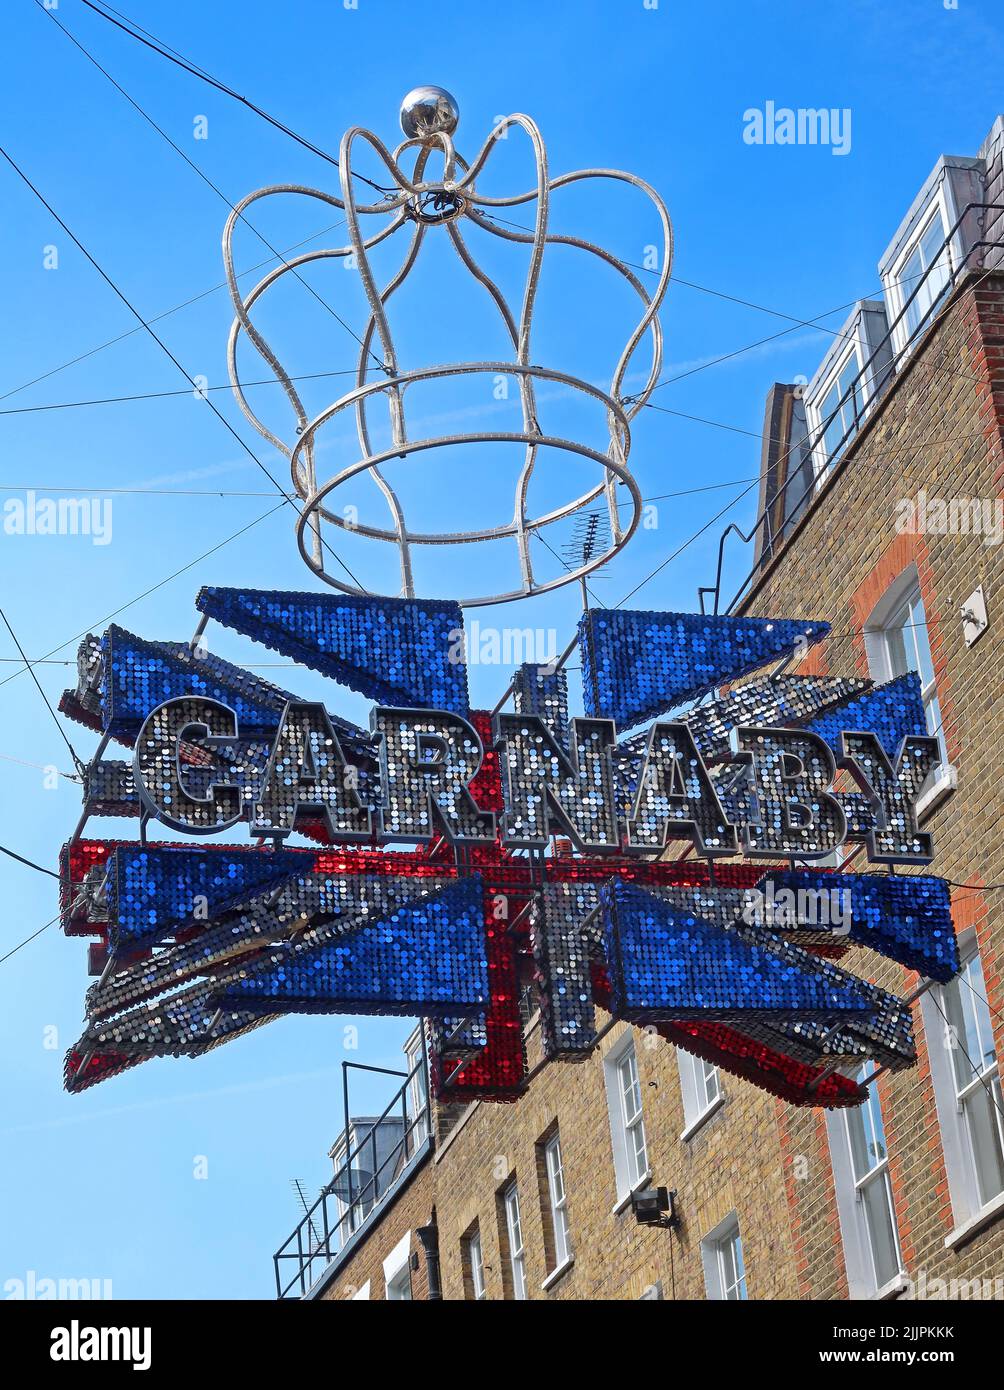 Drapeau de la Couronne et du syndicat britannique dans la célèbre rue Carnaby, Soho, Londres, Angleterre, Royaume-Uni, W1F 9PS Banque D'Images